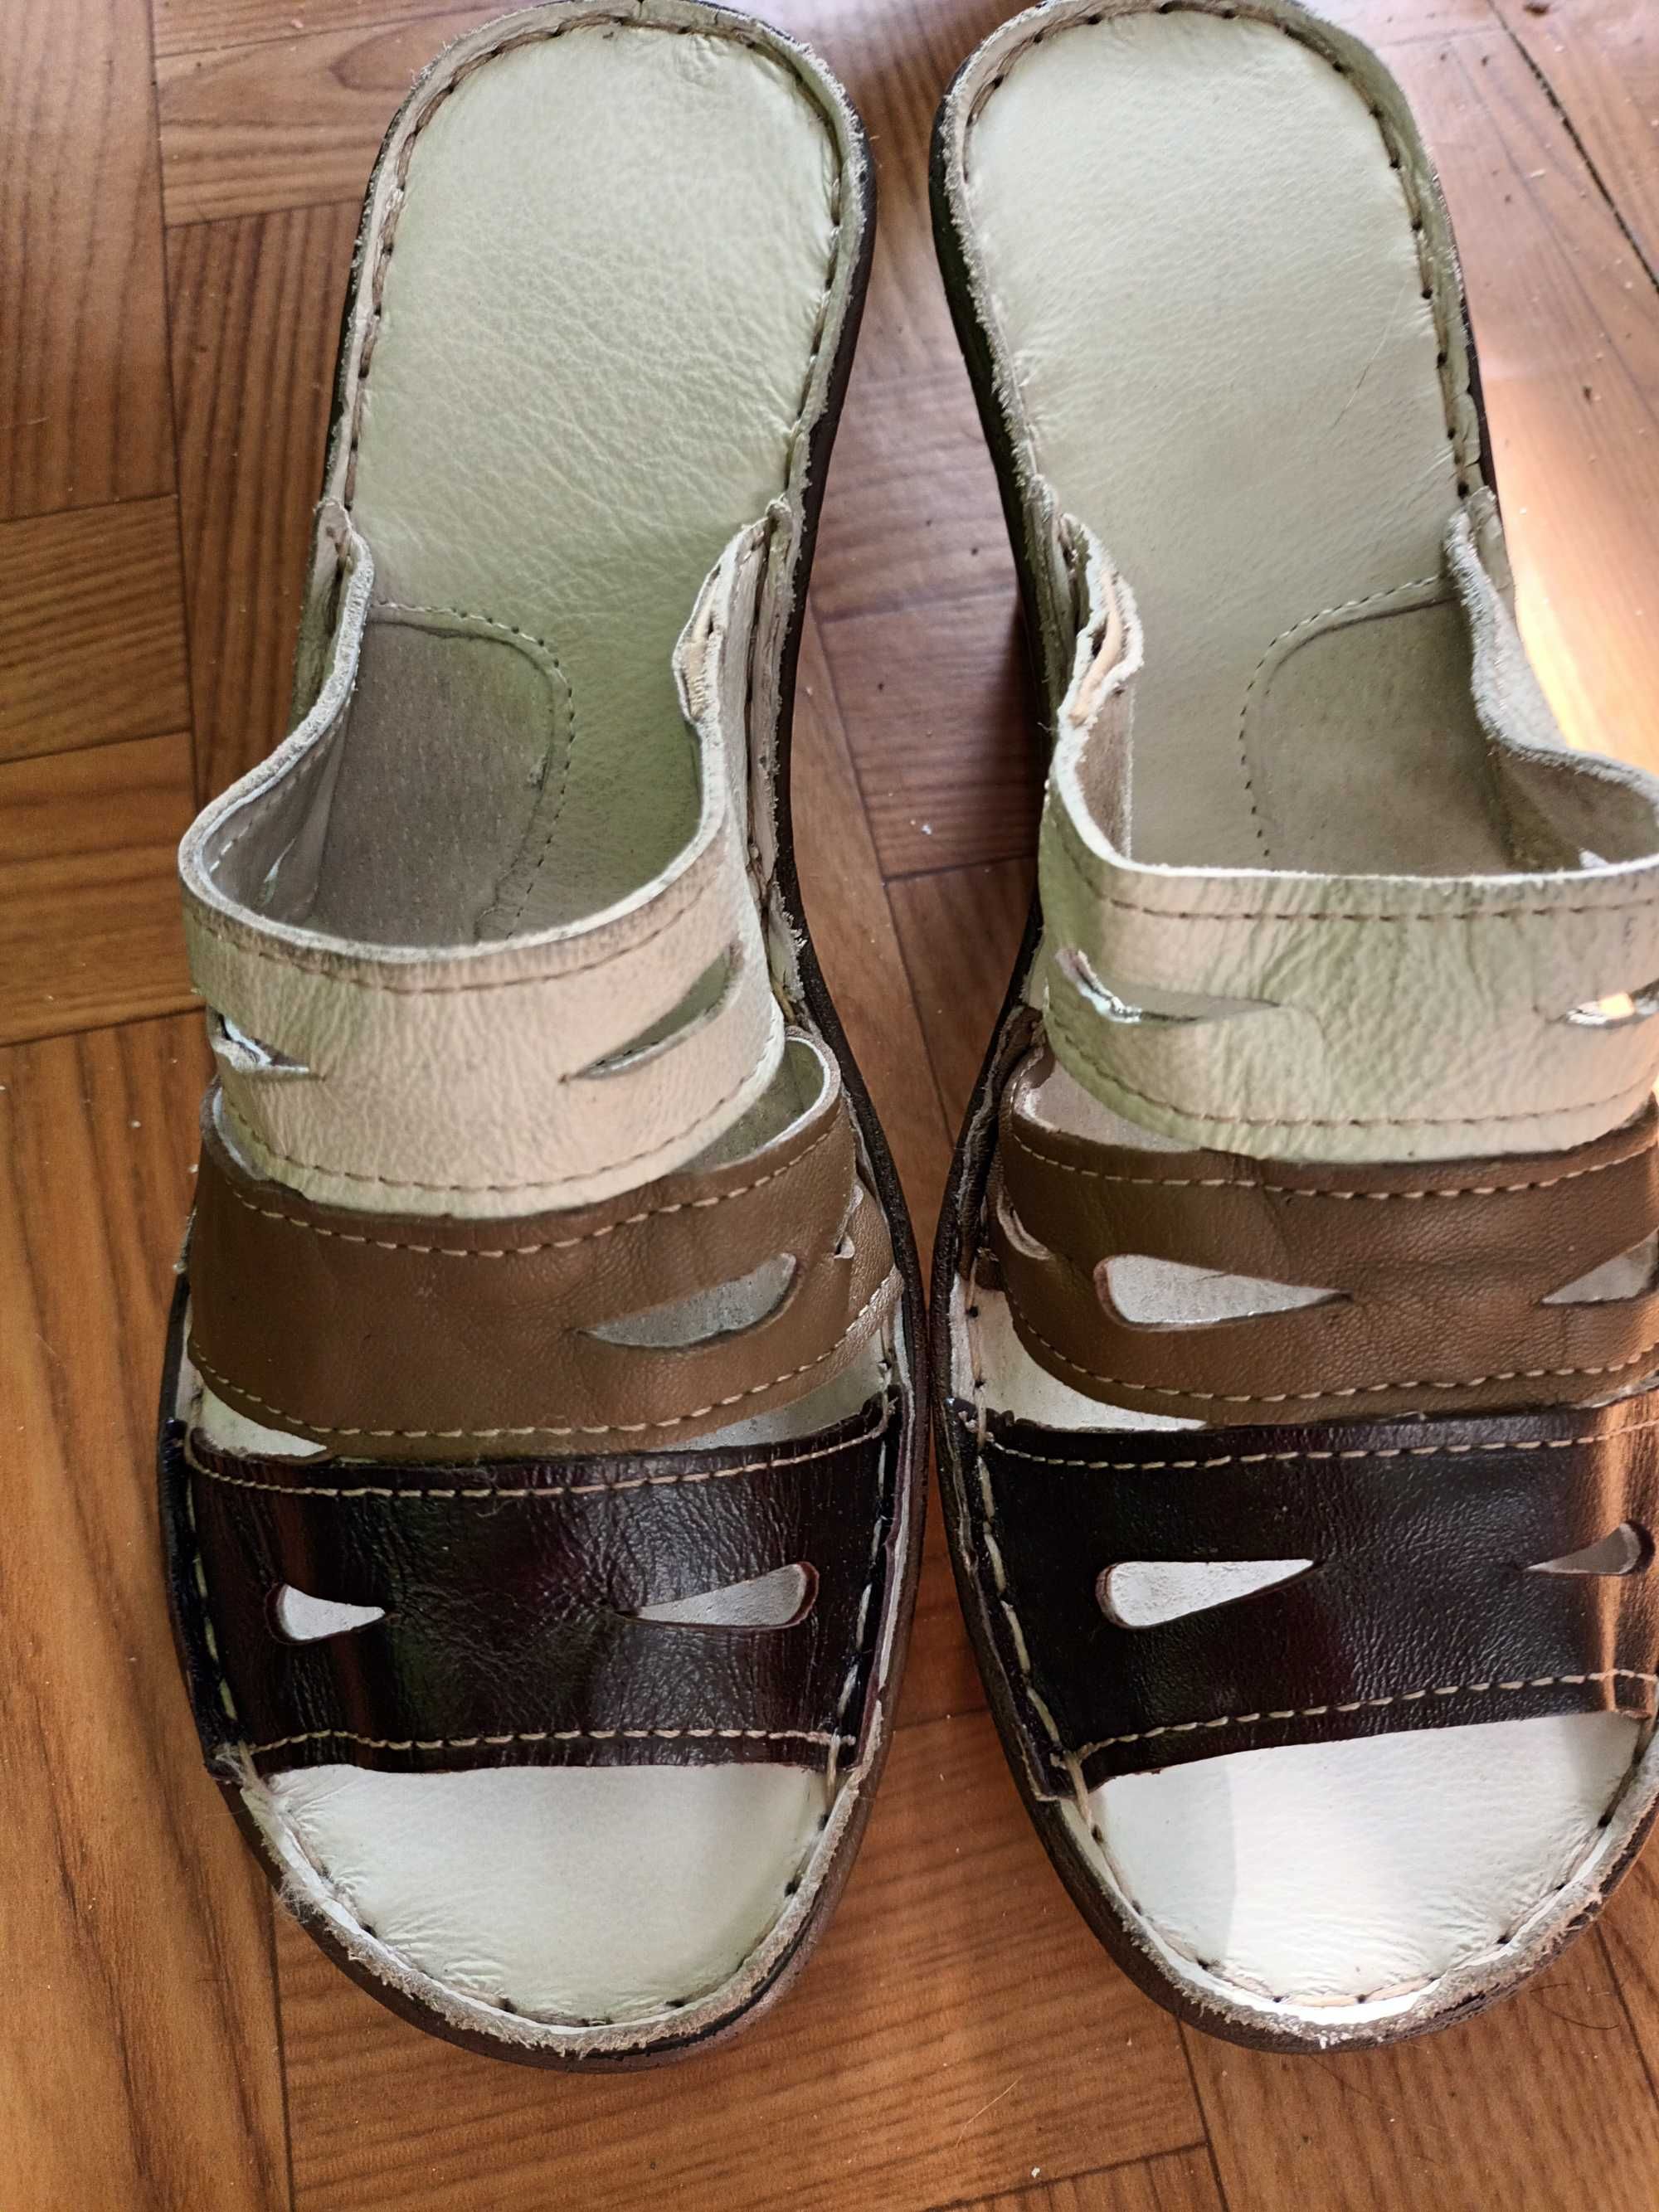 Wyprzedaż-nowe nieużywane buty klapki na koturnie-roz.38-BARDZO TANIO